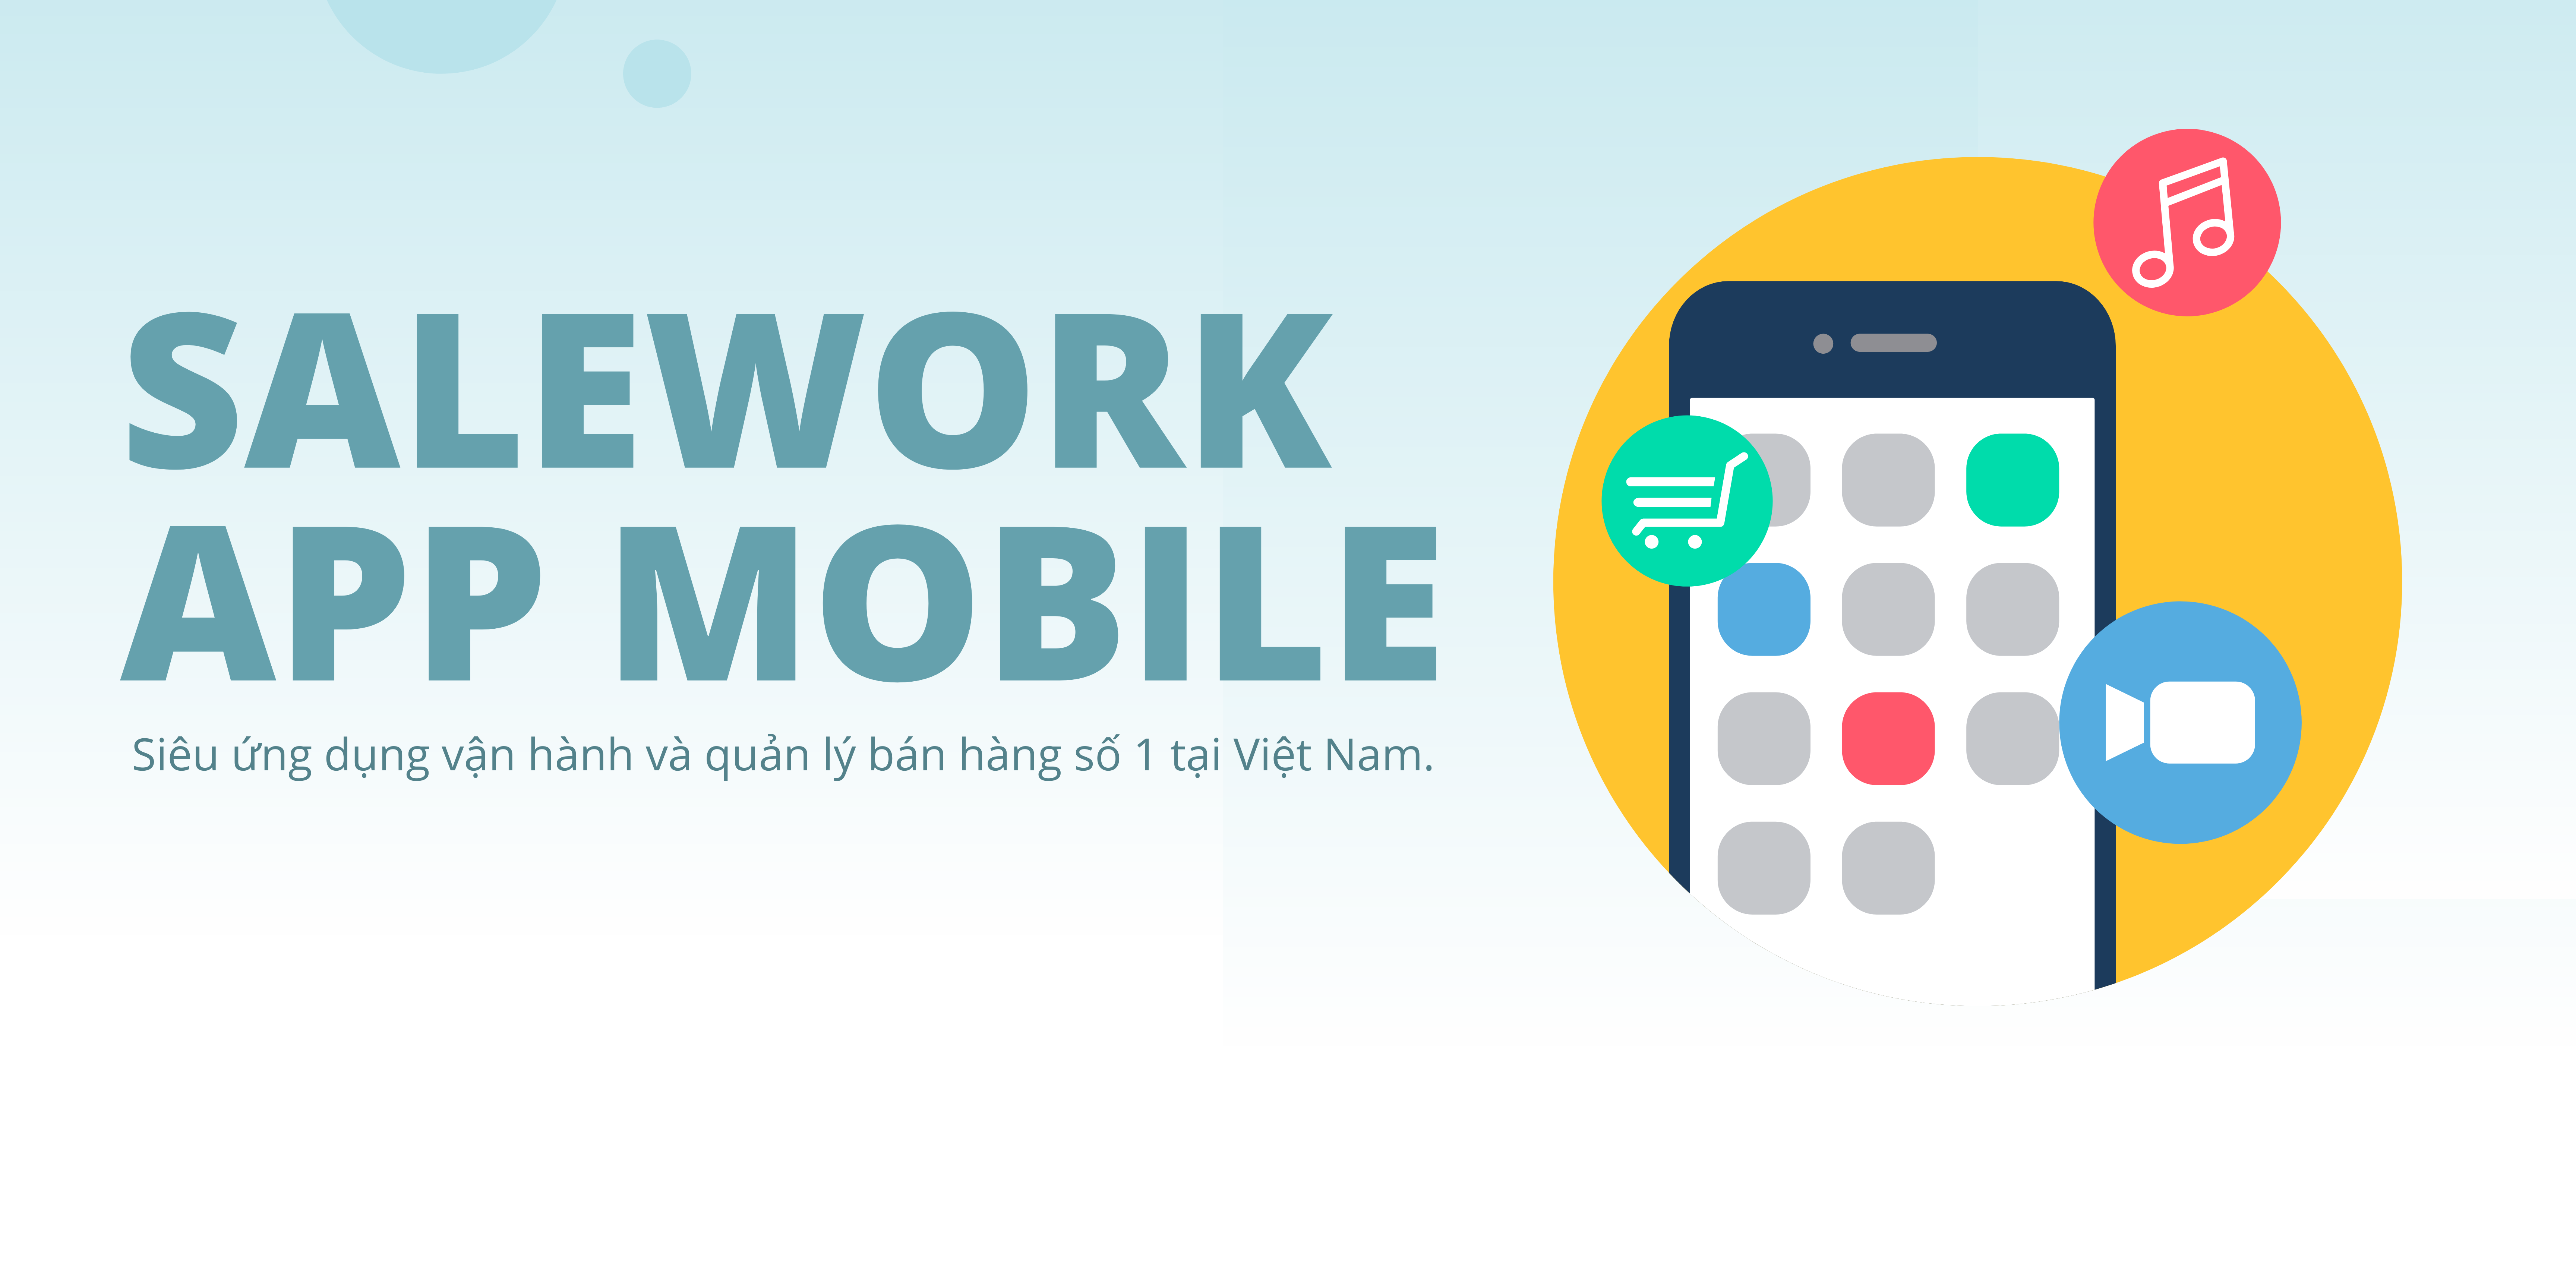 Salework app - Ứng dụng quản lý bán hàng đa kênh trên điện thoại tốt nhất tại Việt Nam - 24